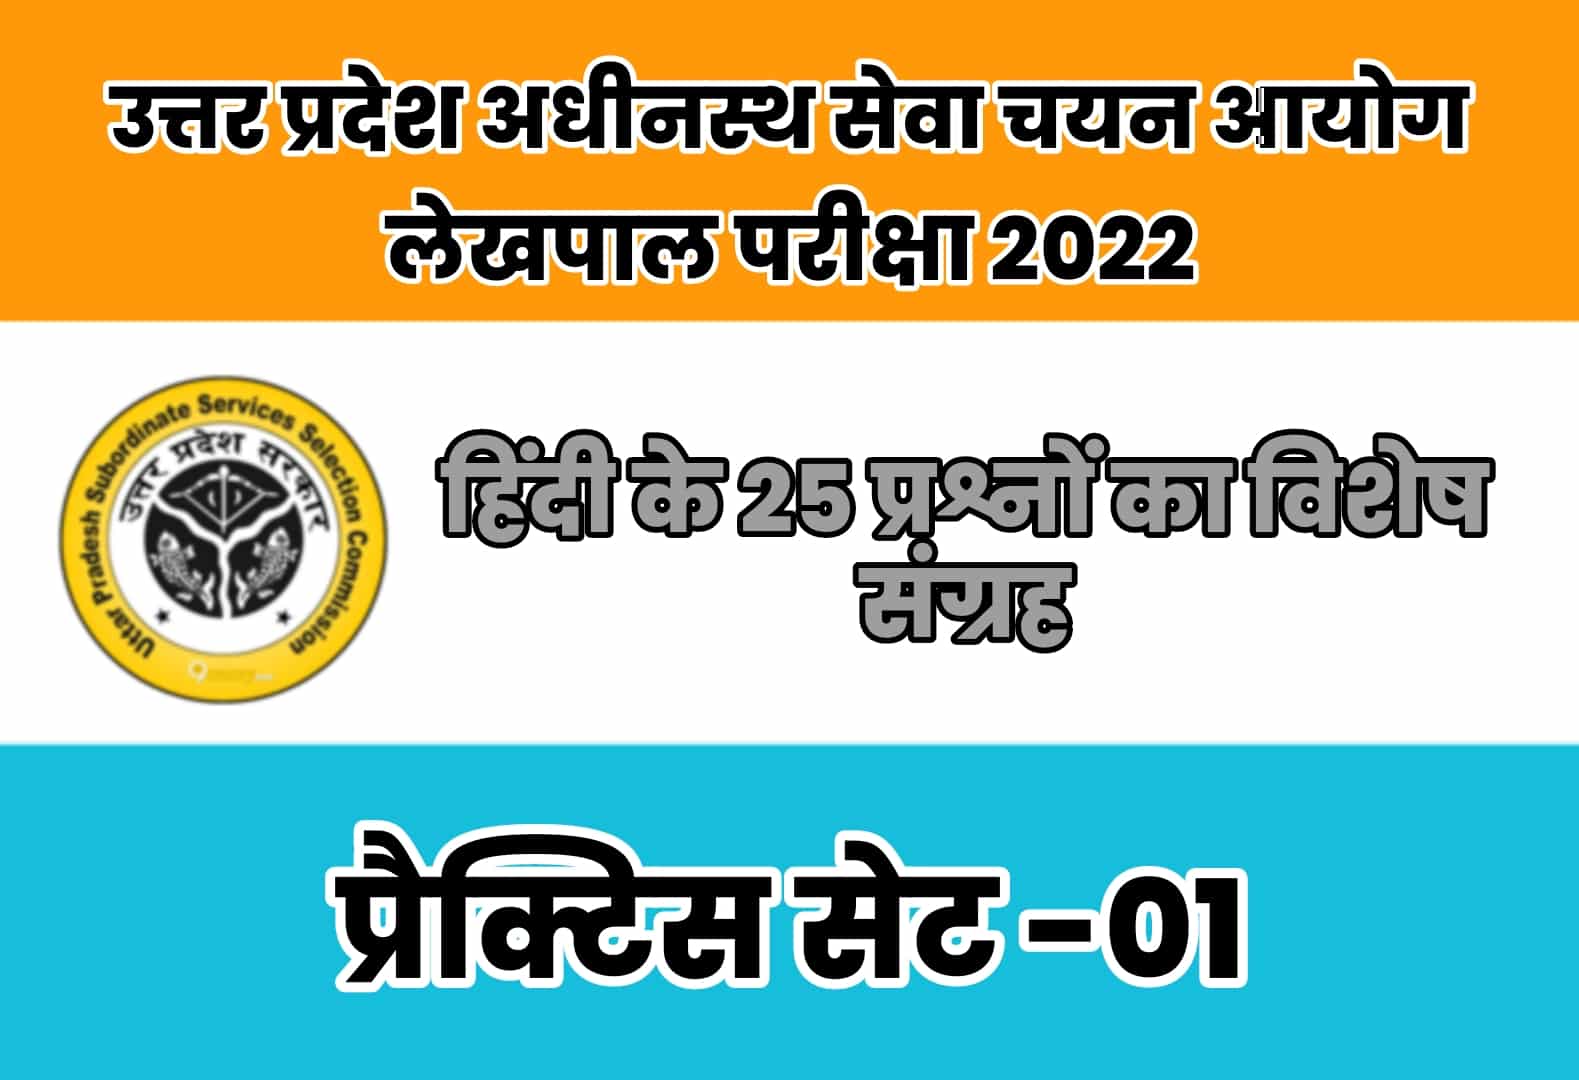 UP Lekhpal Exam 2022 प्रैक्टिस सेट 01 : 24 जुलाई को होगी परीक्षा, हिंदी के इन 25 मुख्य प्रश्नों का अवश्य कर लें अध्ययन